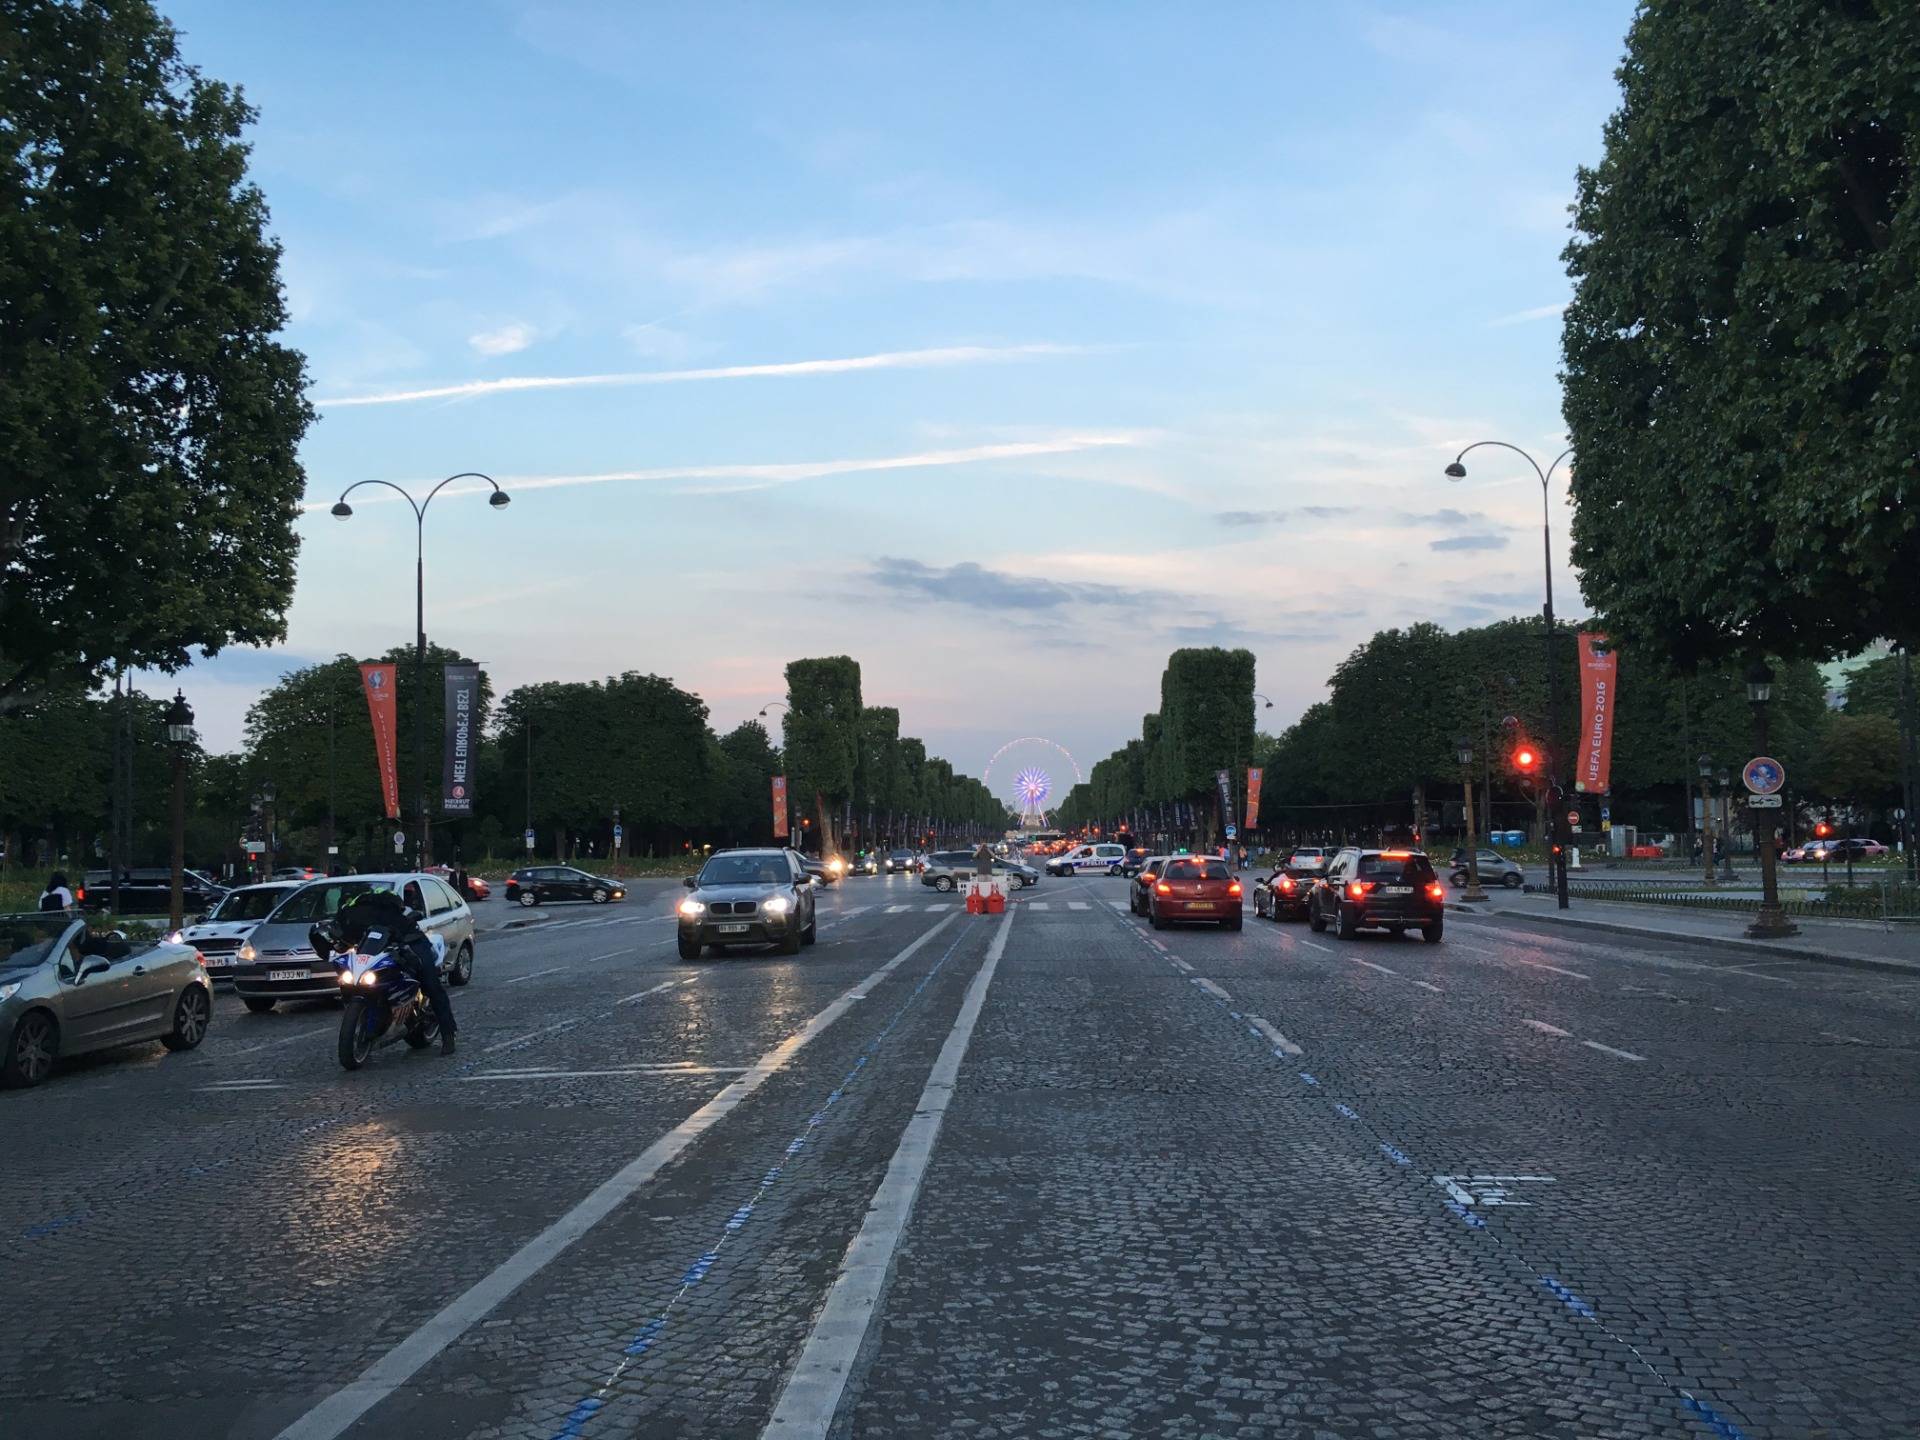 Avenue des Champs-Élysées towards Place de la Concorde